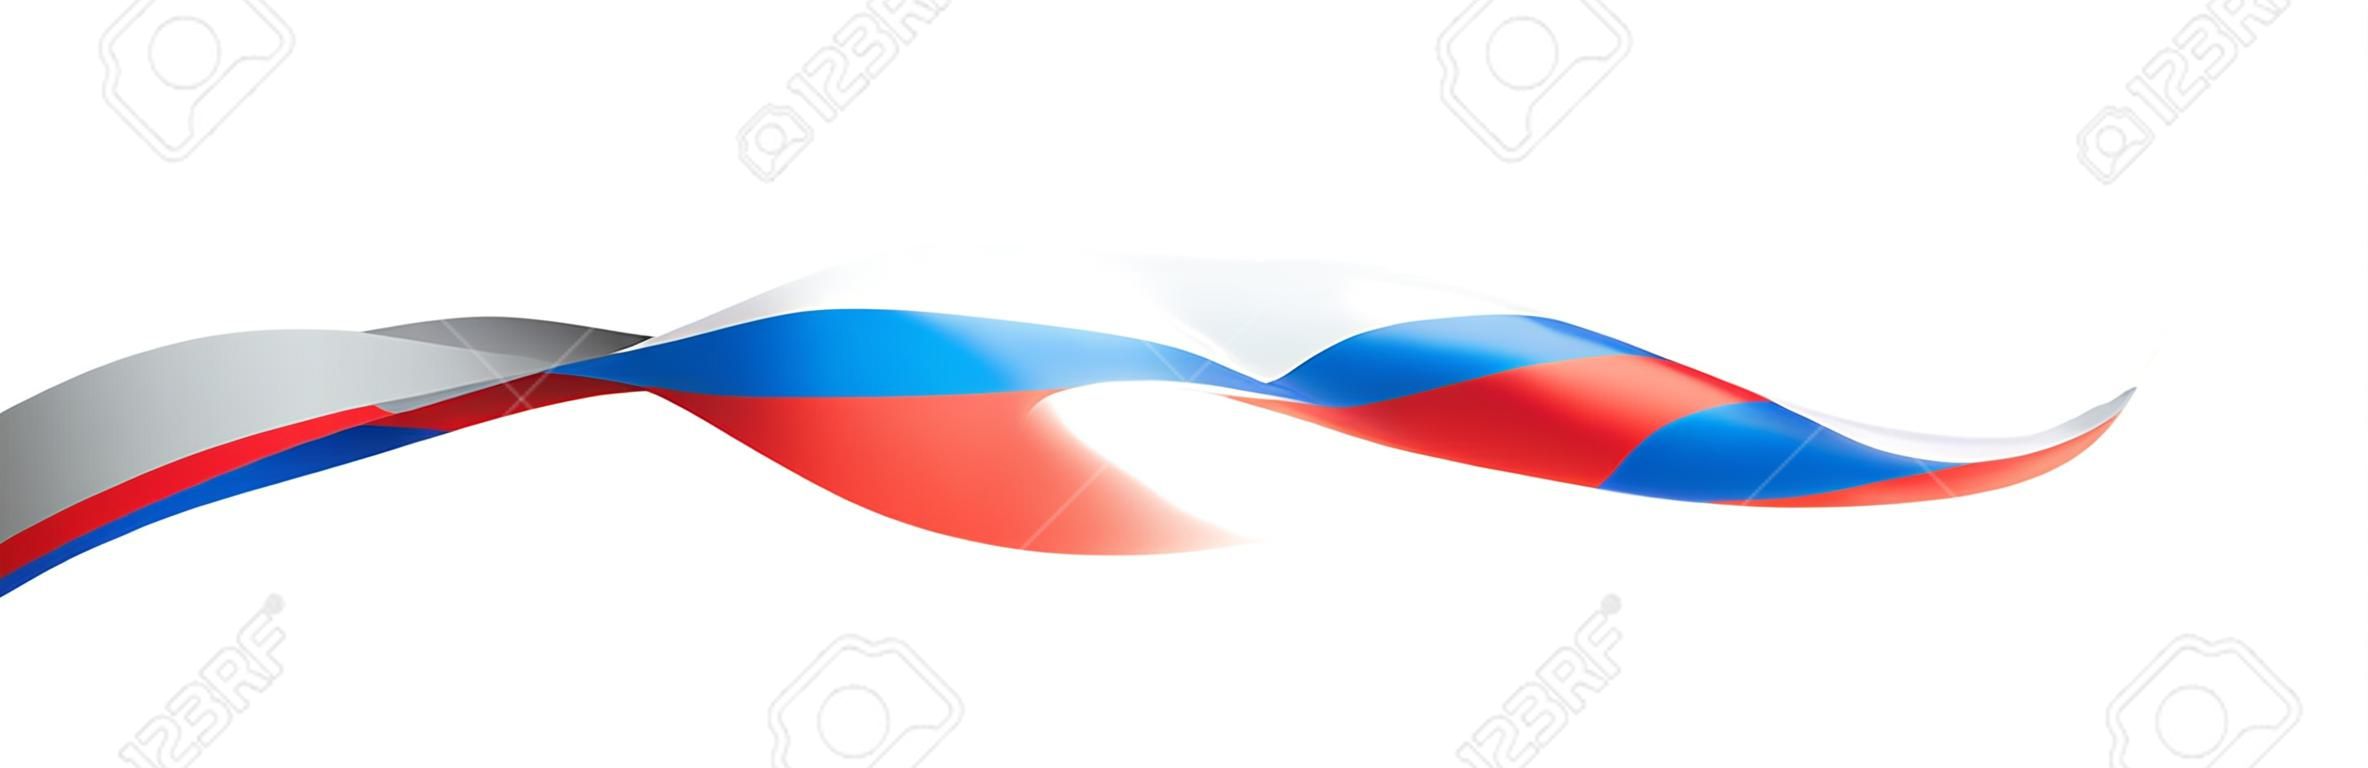 Bandera de Rusia, ilustración vectorial sobre fondo blanco.